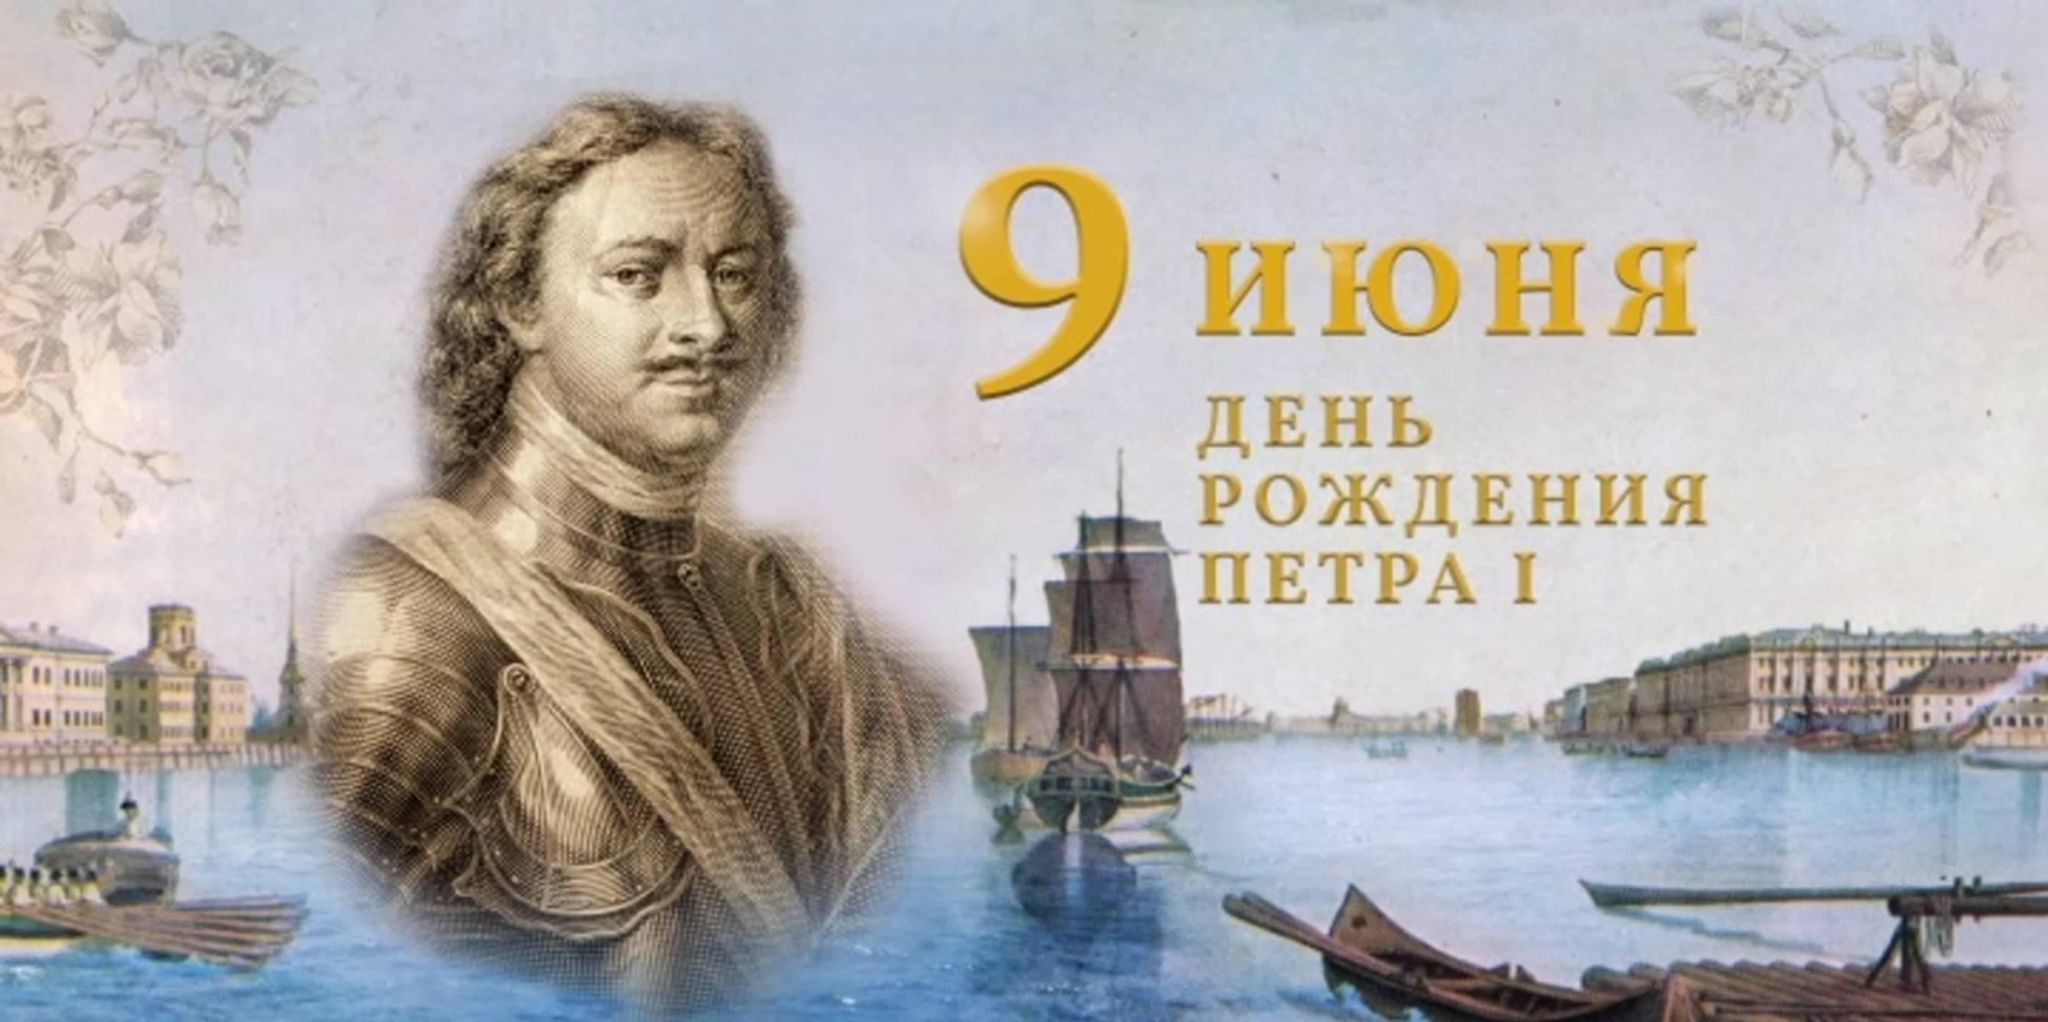 Петр i Великий (1672 – 1725)